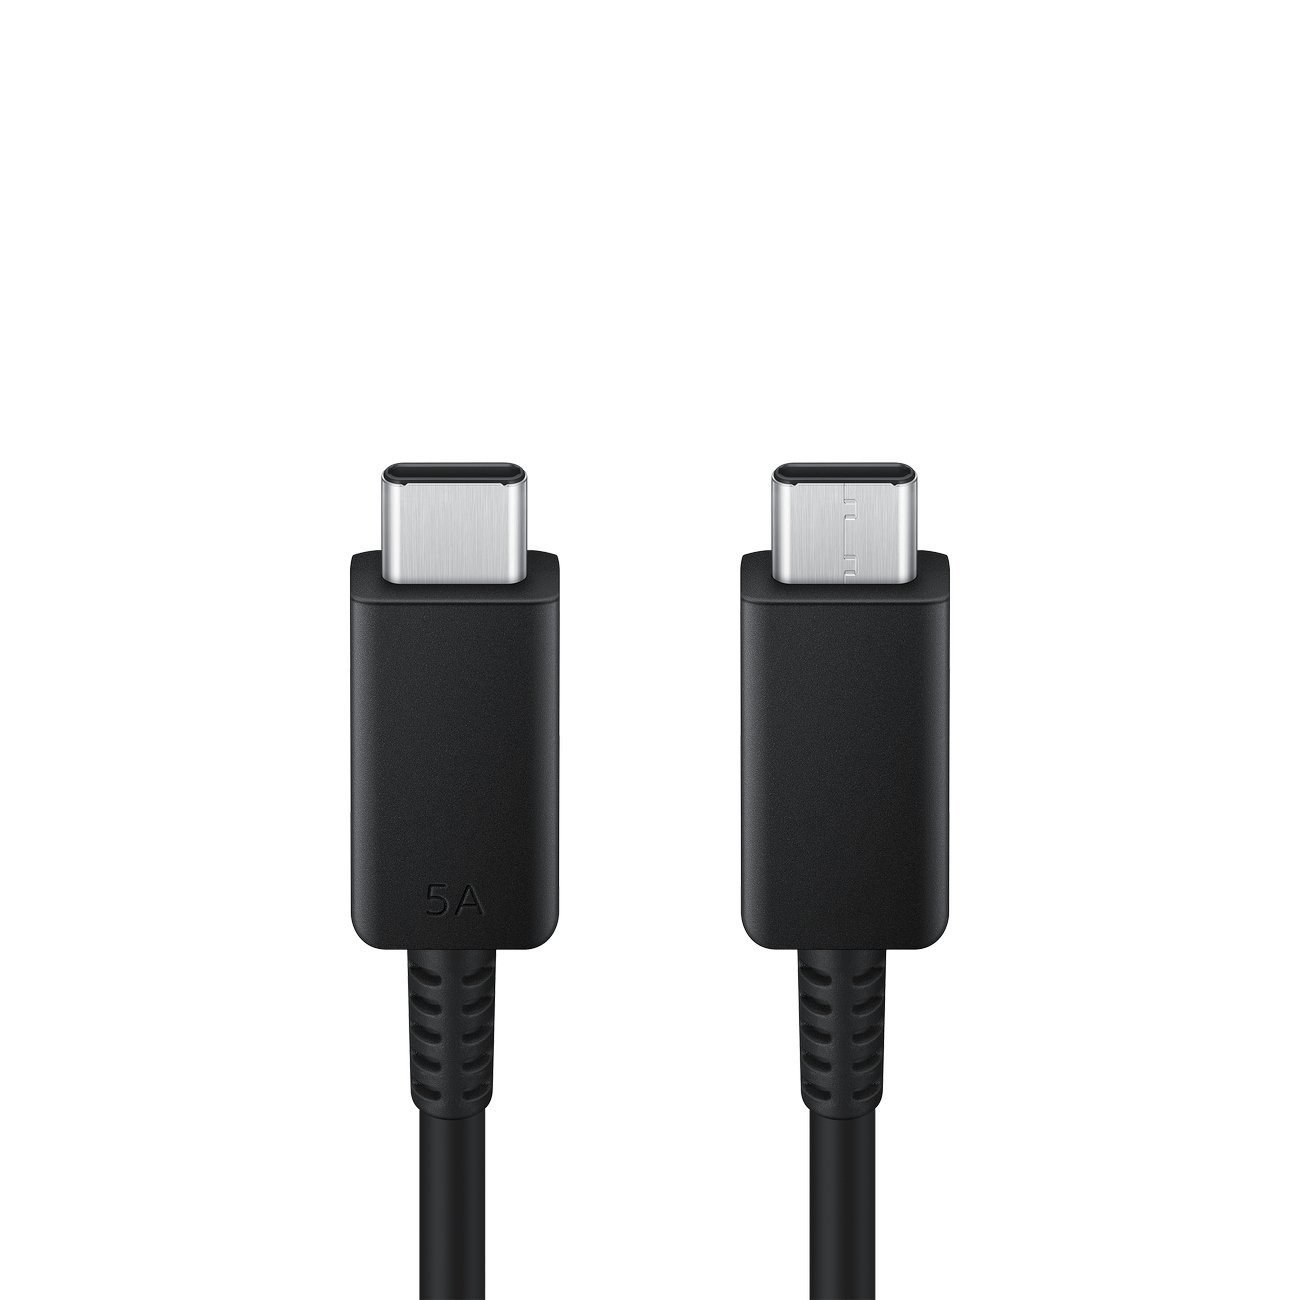 Kabel USB oryginalny Samsung Typ-C na Typ-C 5A 1.8m EP-DX510JBEGEU czarny SONY Xperia XA1 Plus / 3